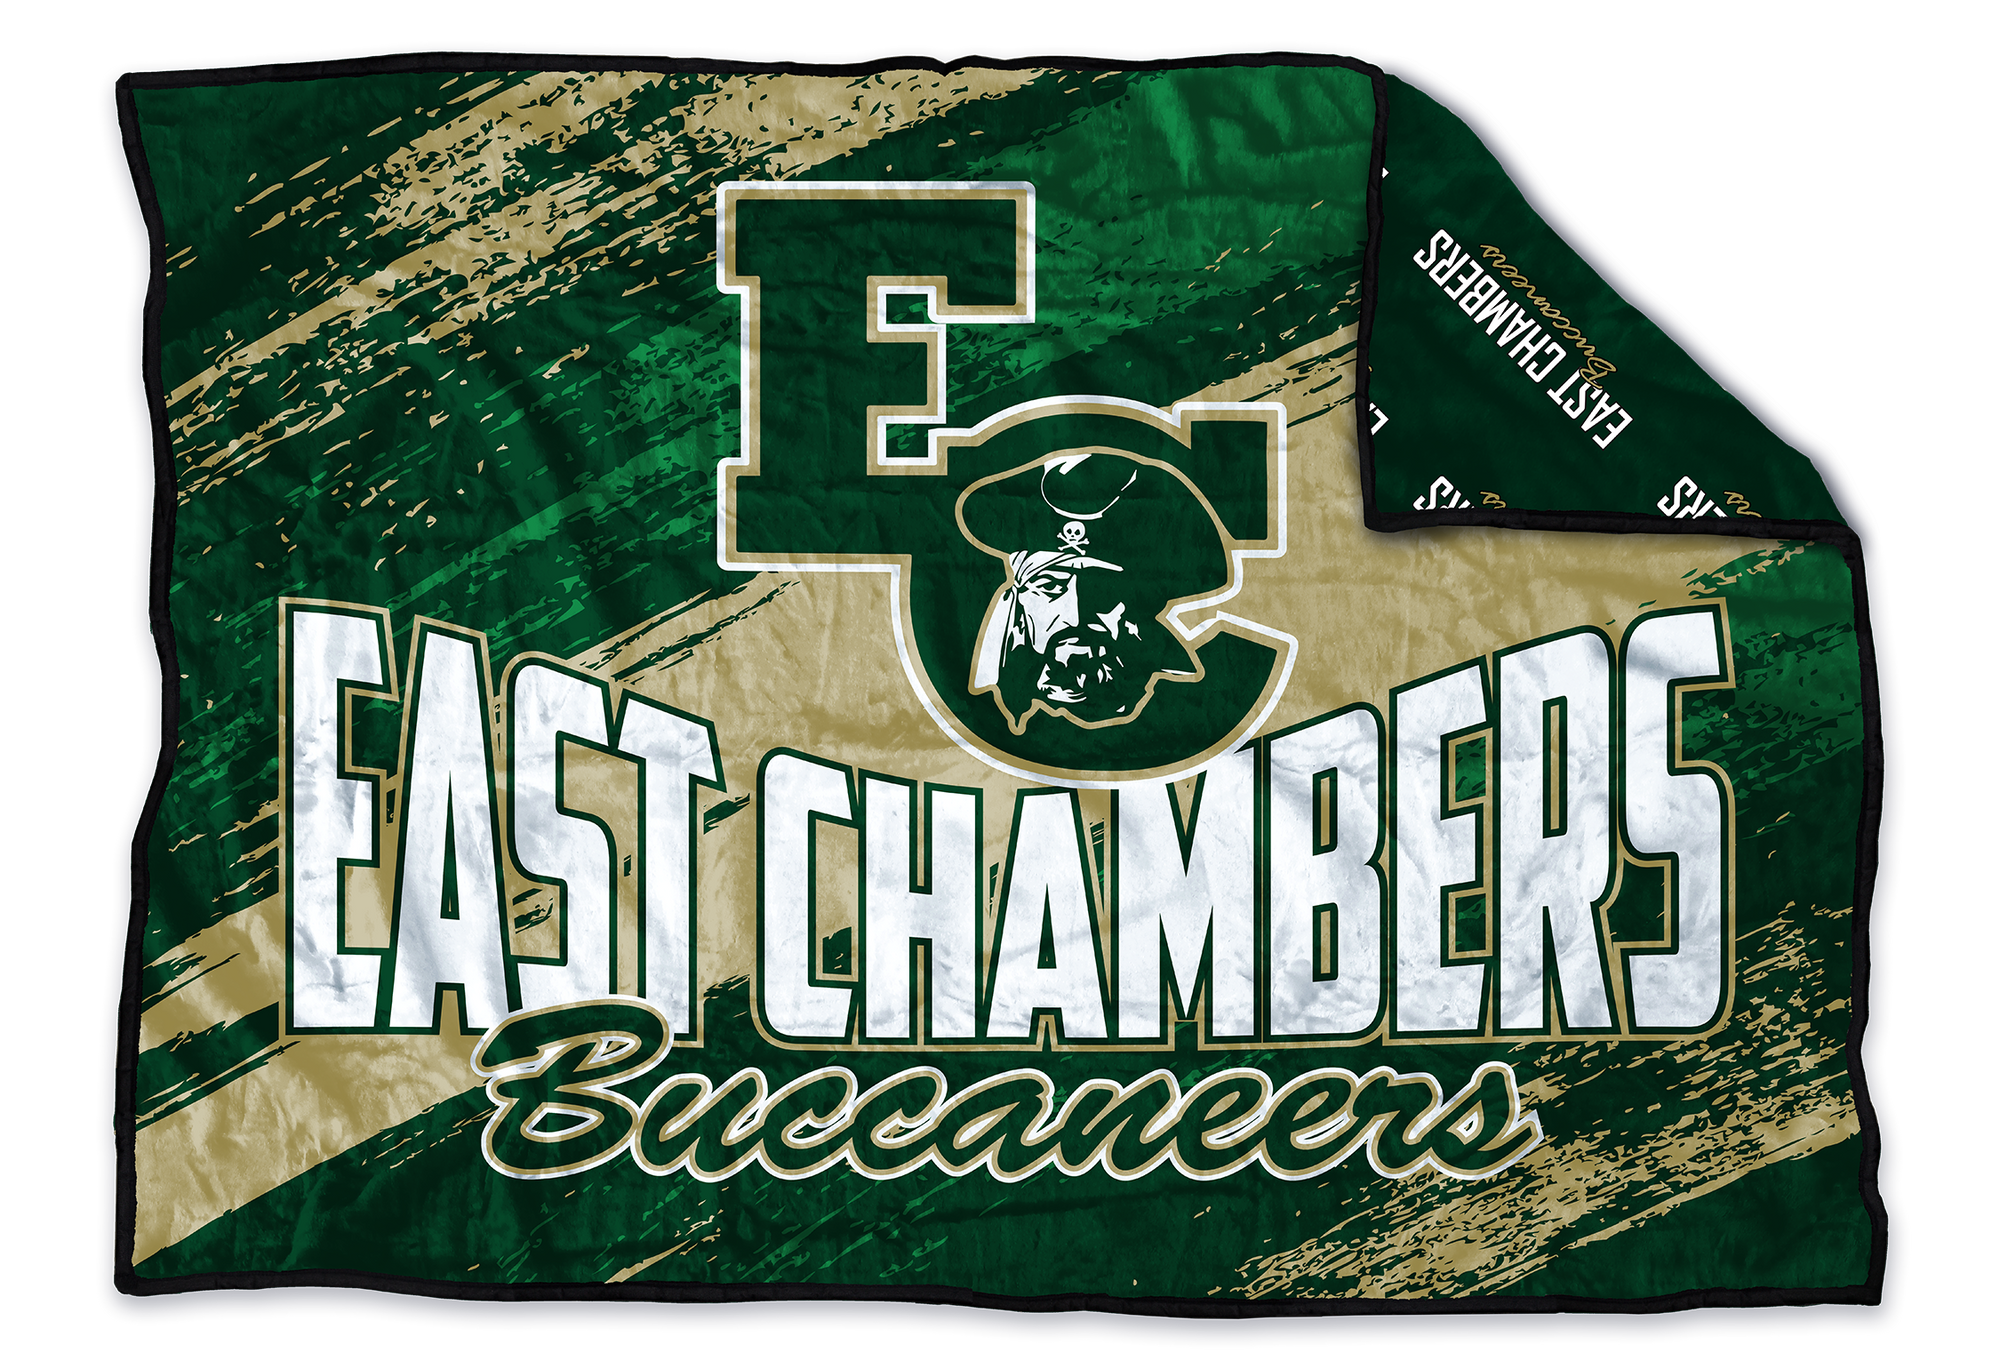 East Chambers Buccaneers